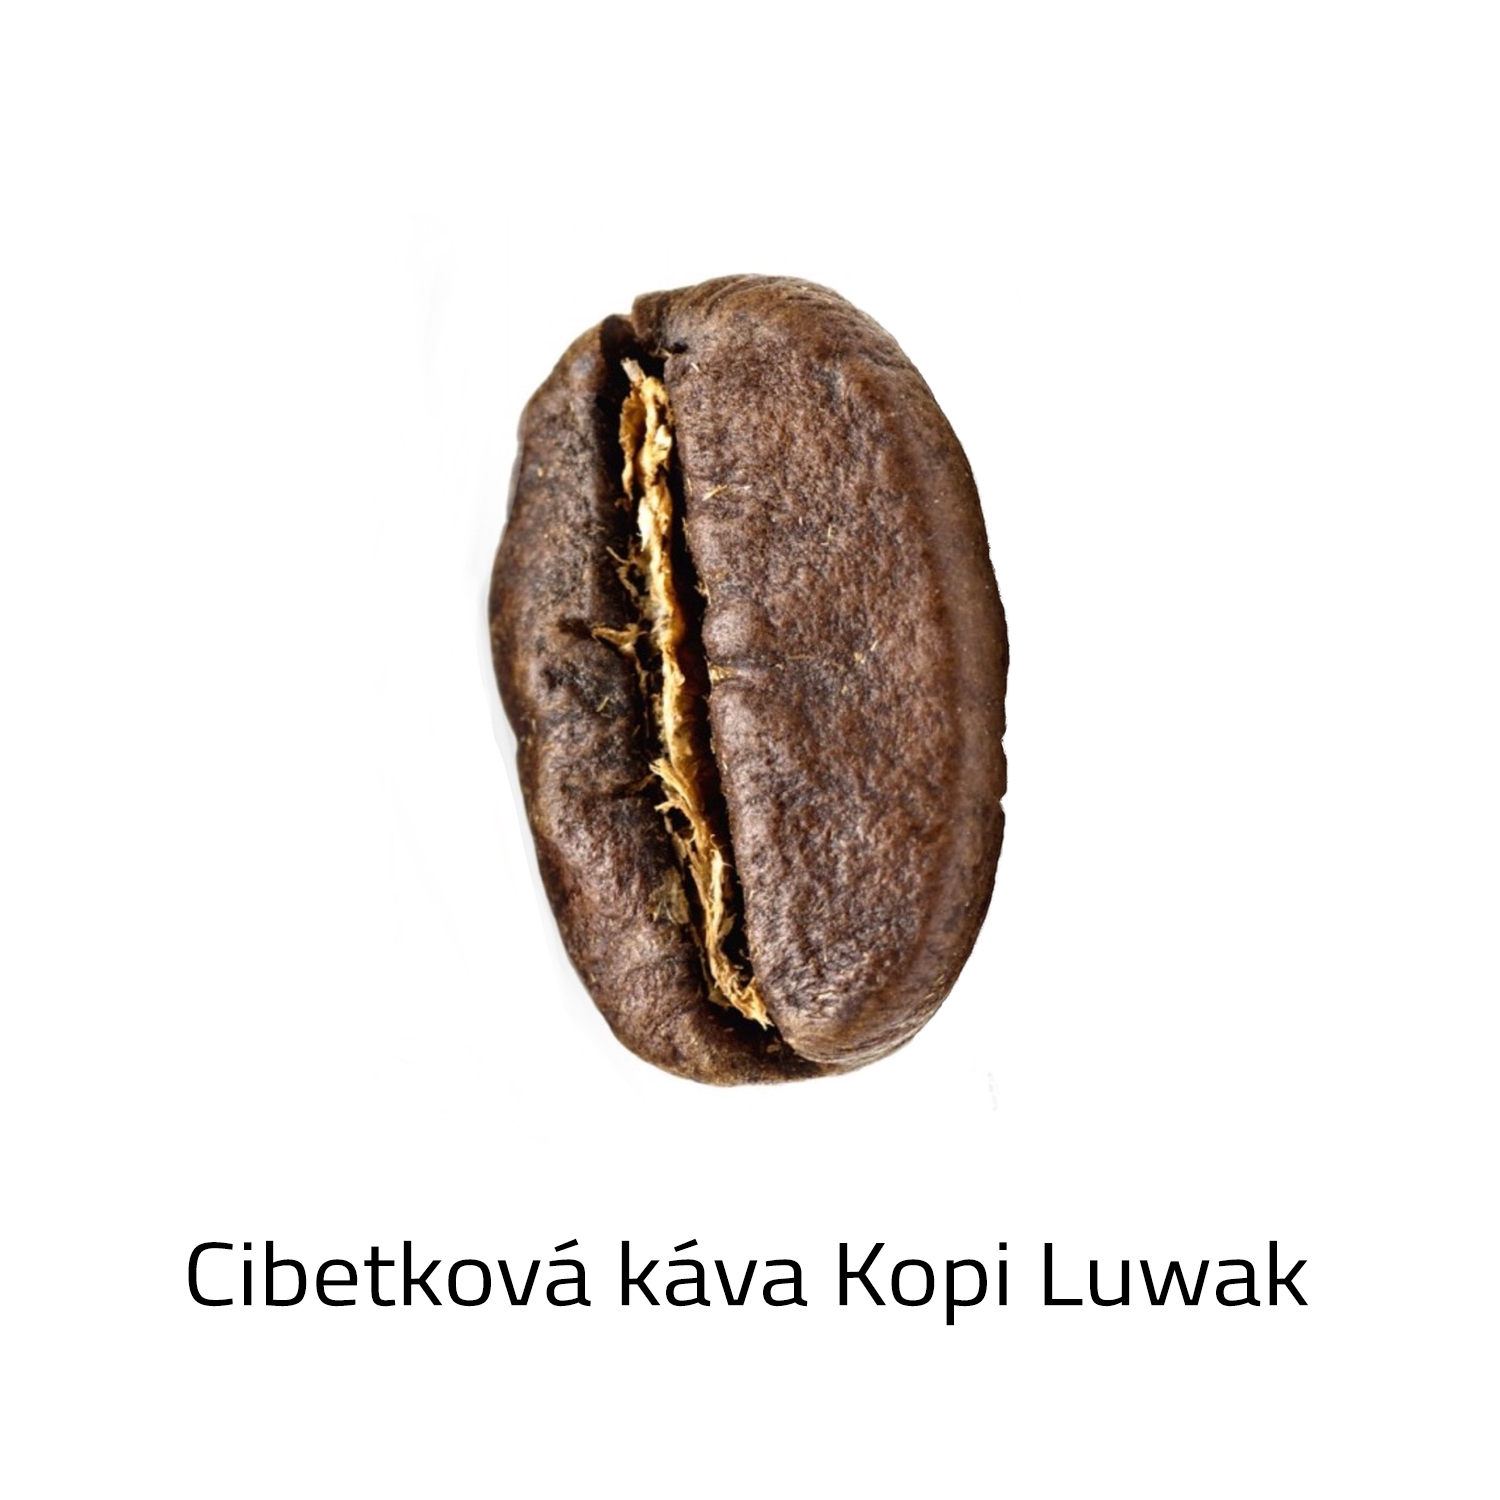 Čerstvě pražená Cibetková káva zrnková - Kopi Luwak 100g